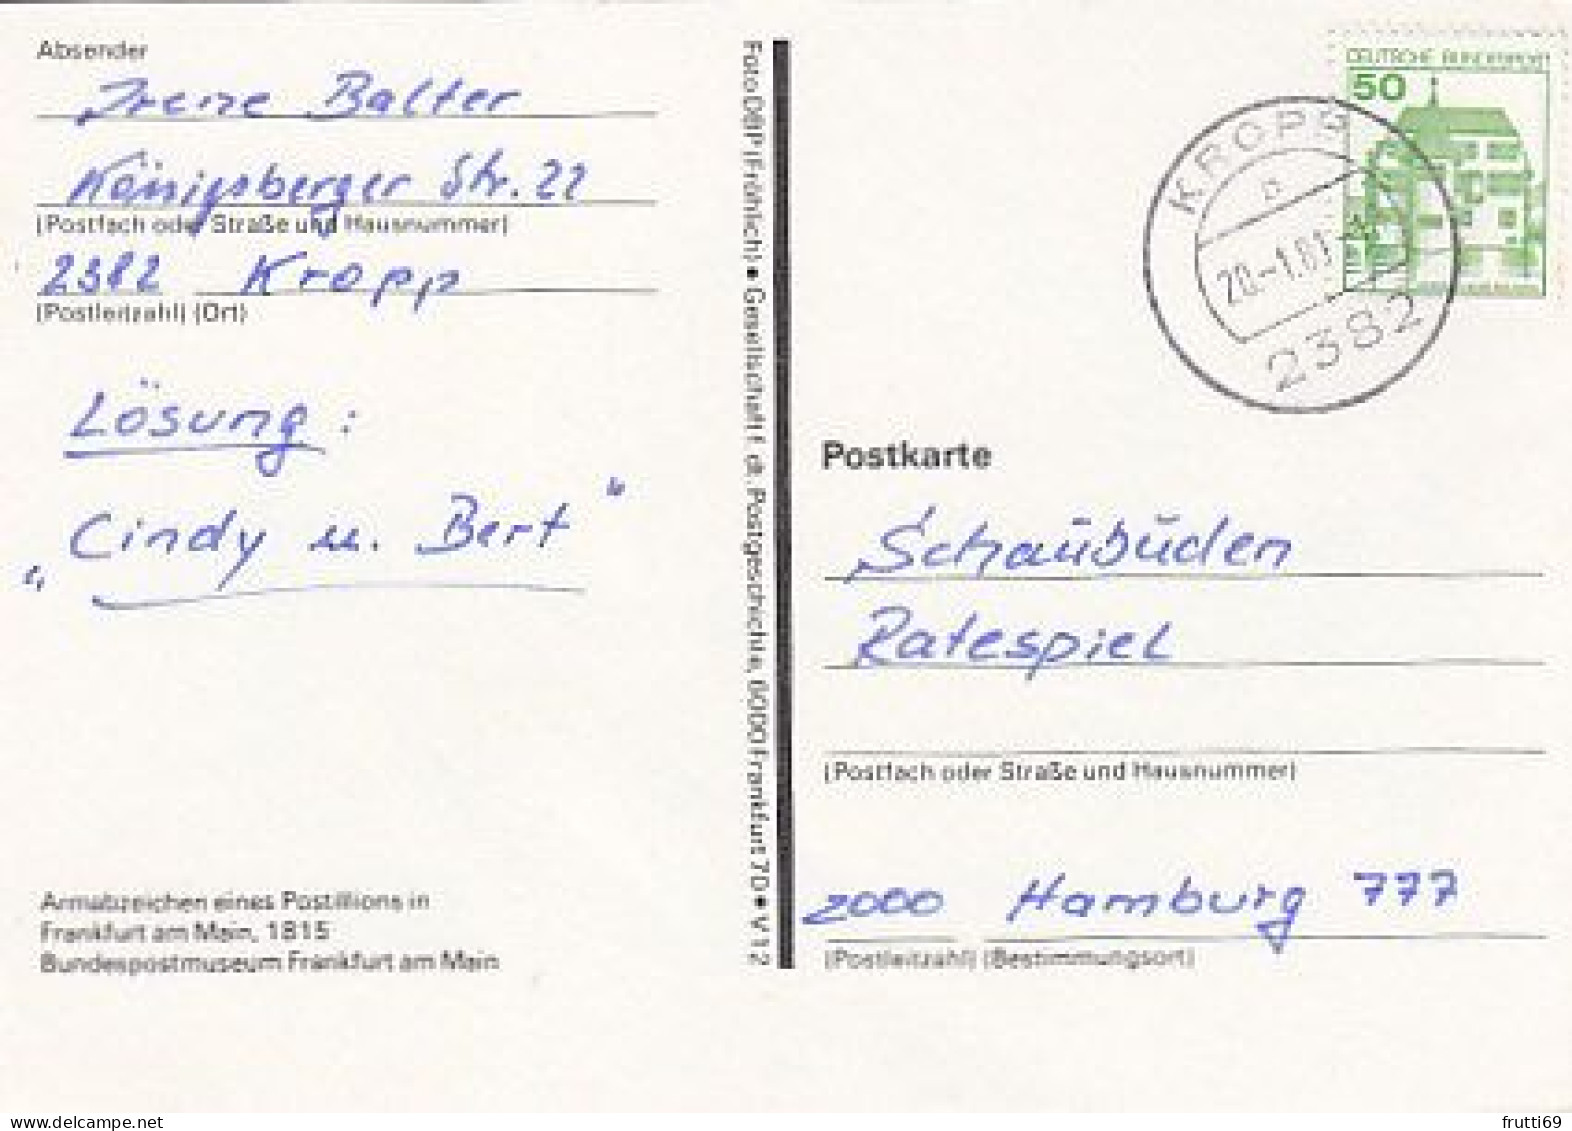 AK 216147 POST -  Armabzeichen Eines Postillions In Frankfurt Am Main 1815 - Postal Services